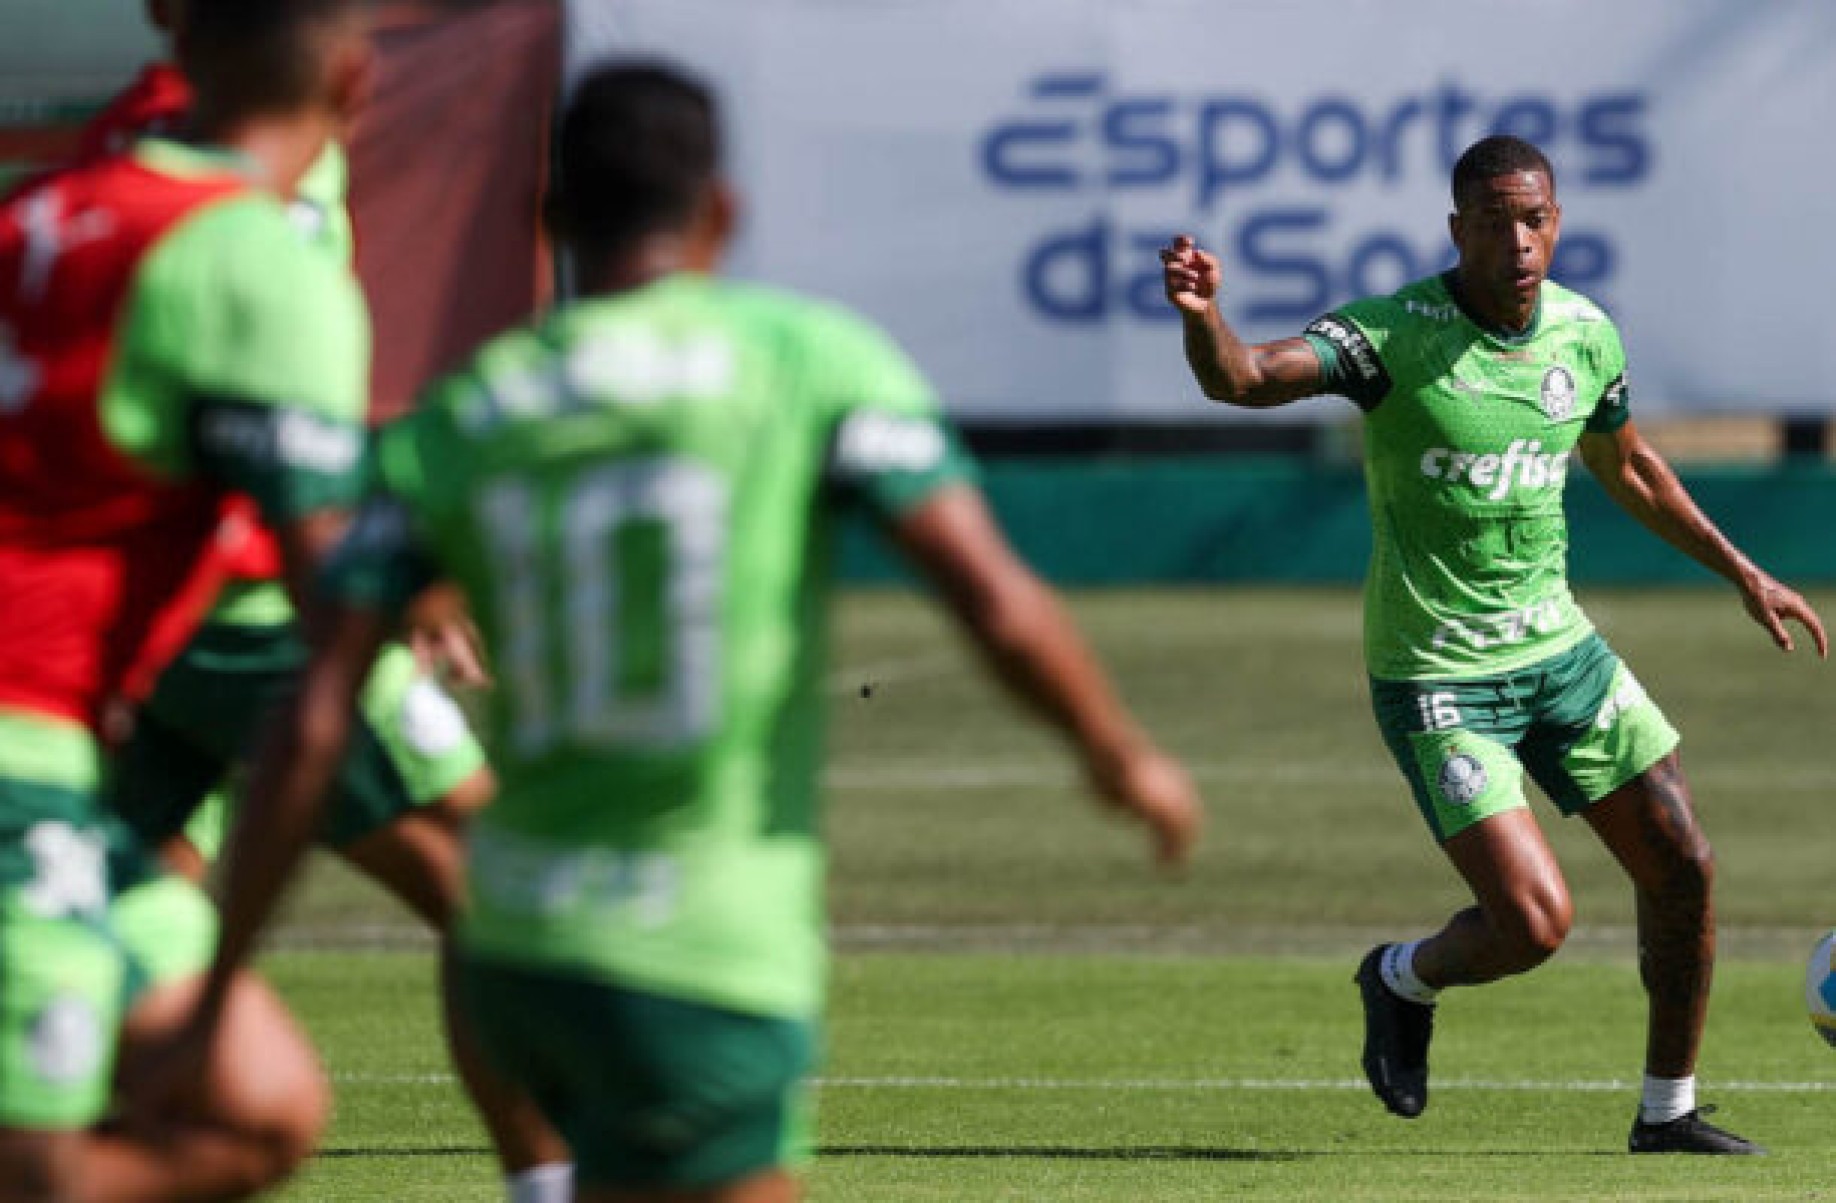 Palmeiras treina na Academia de Futebol, e Caio Paulista projeta duelo com o Vasco